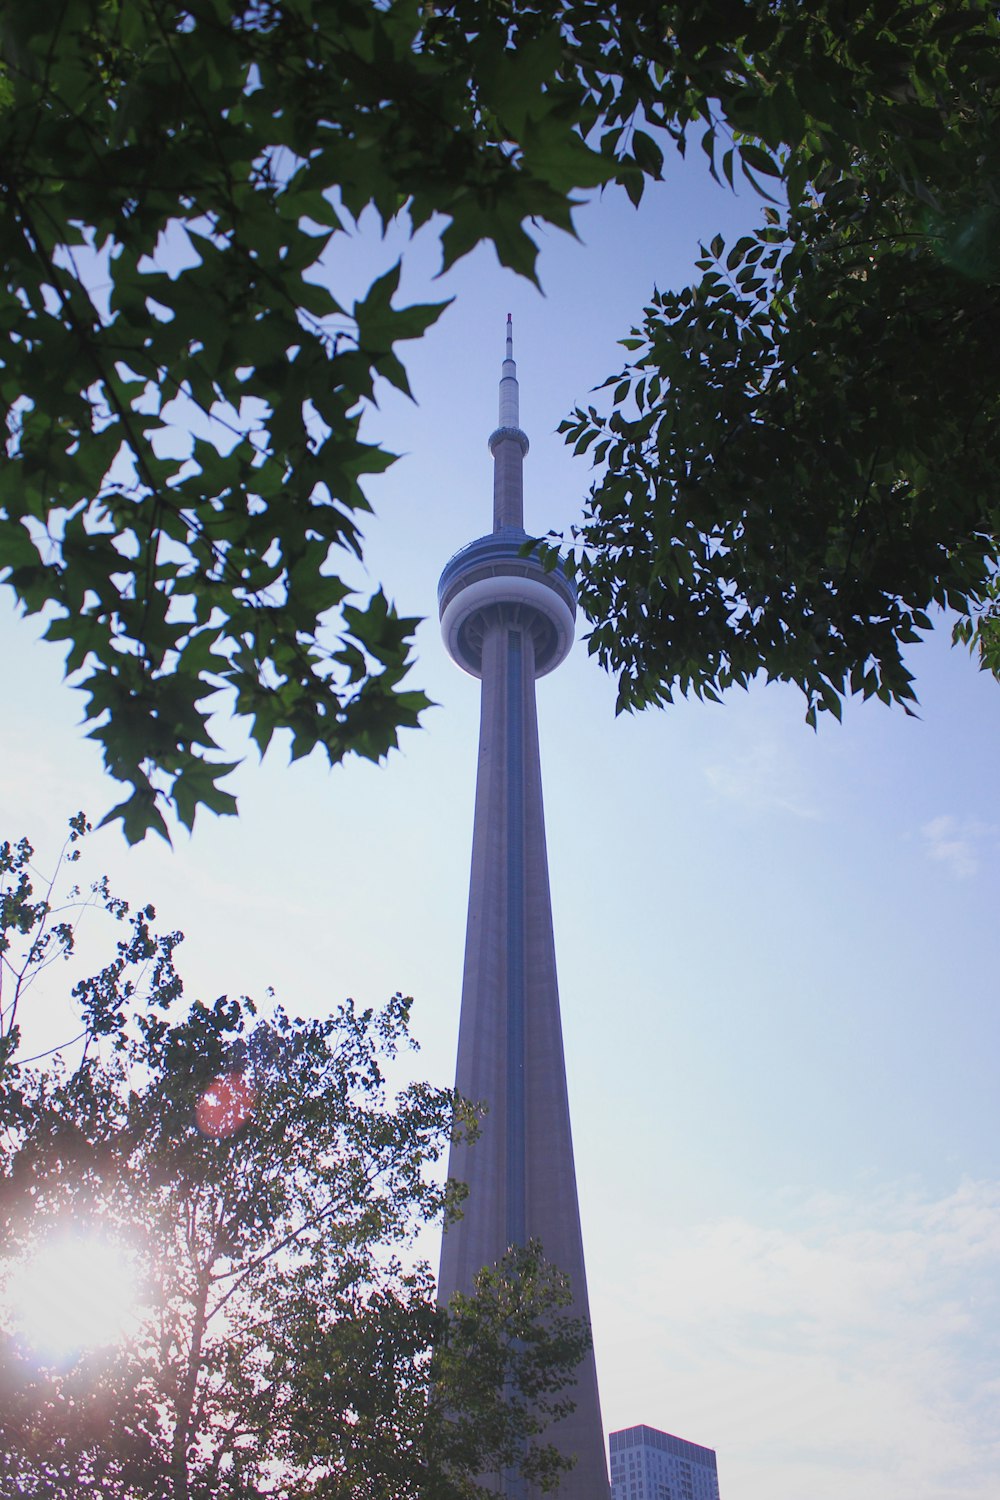 CN Tower during daytime